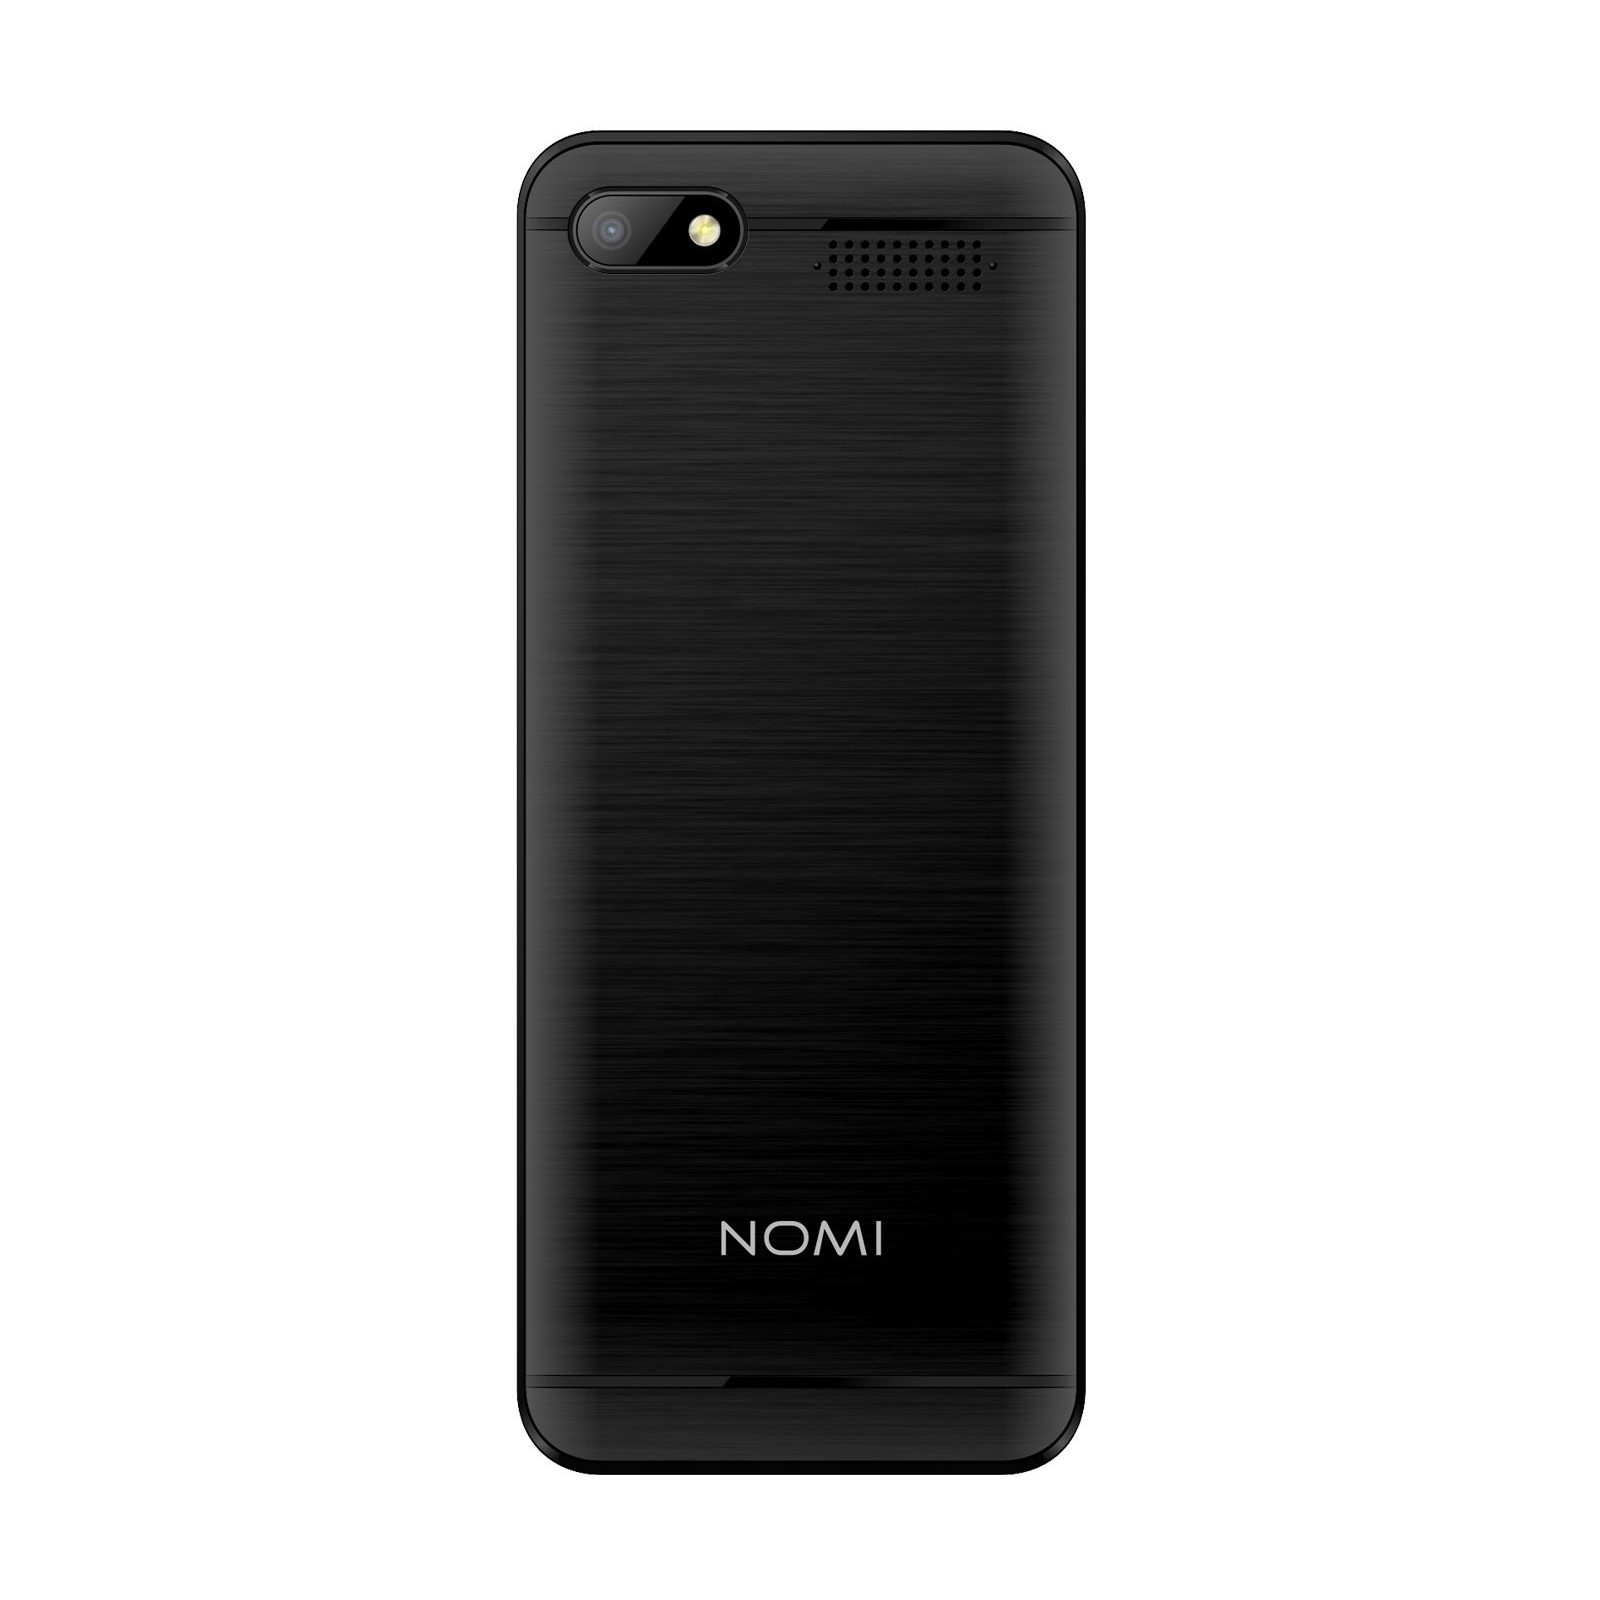 Мобильный телефон Nomi i2820 Black изображение 2